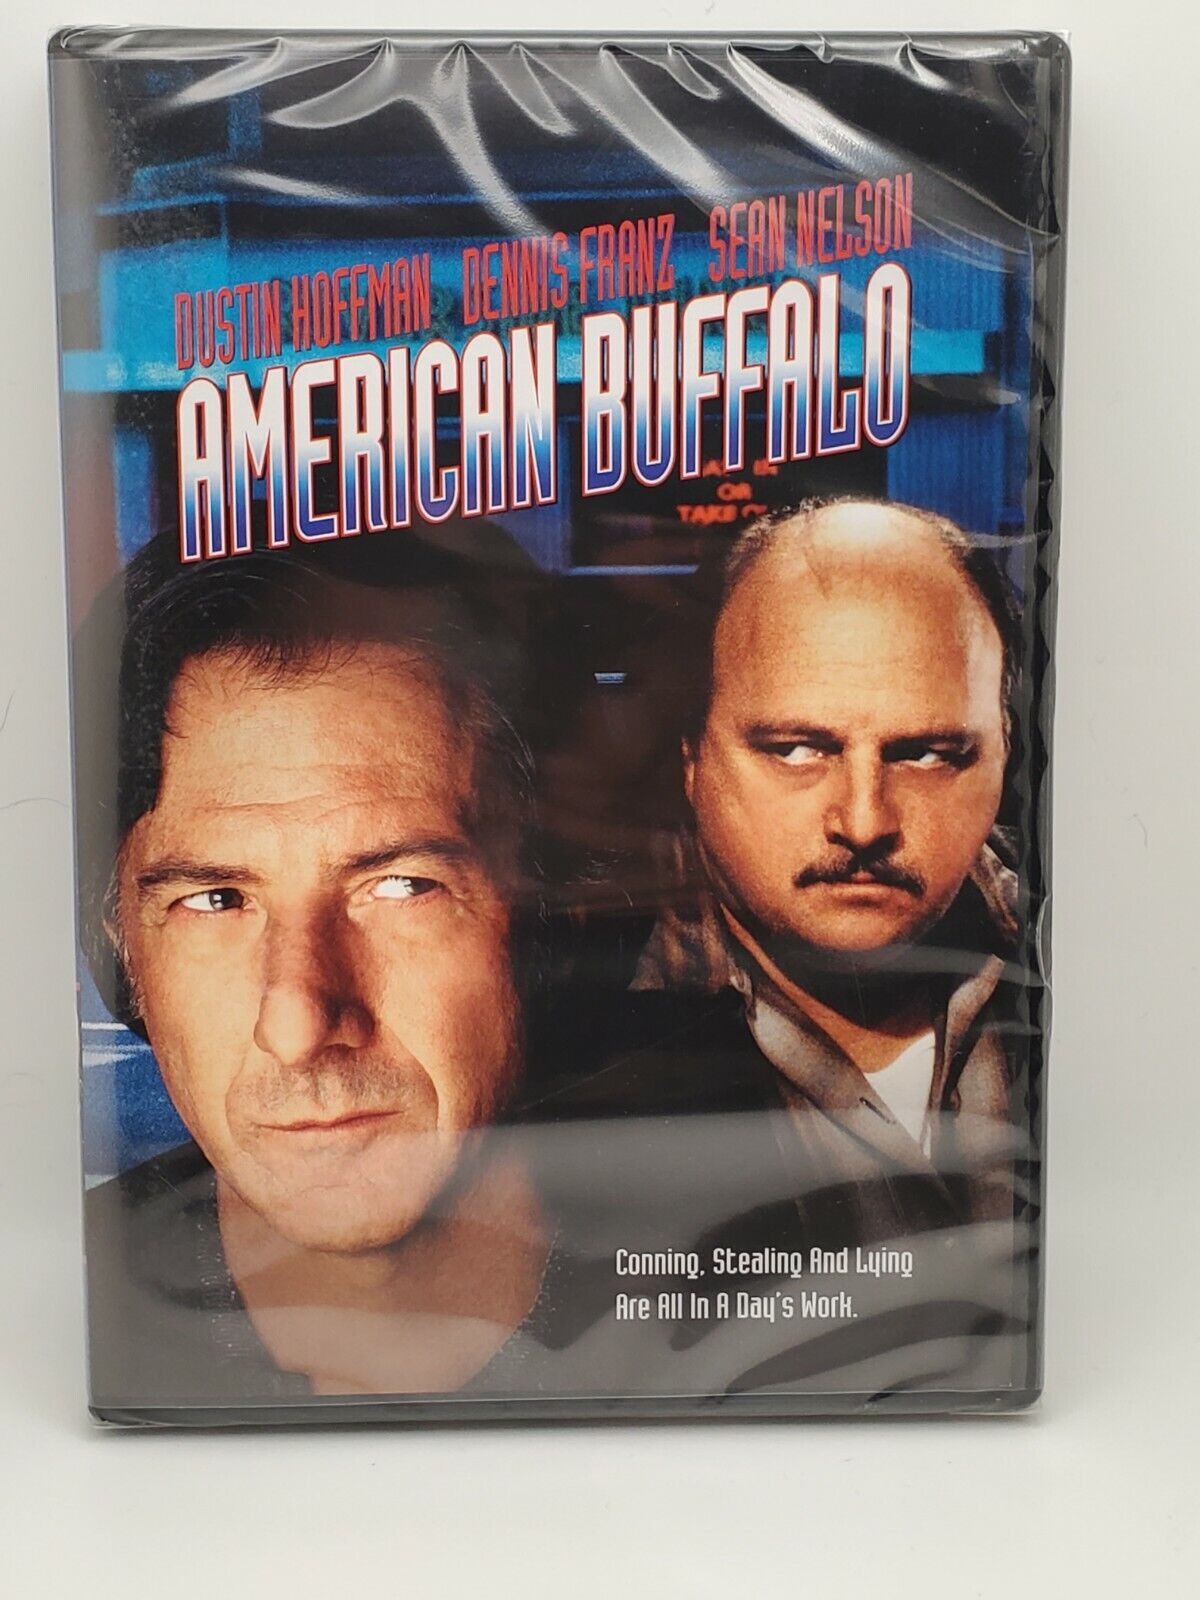 American Buffalo (DVD, 1996) Drama, Dustin Hoffman, Dennis Franz, Sean  Nelson 27616857651 eBay